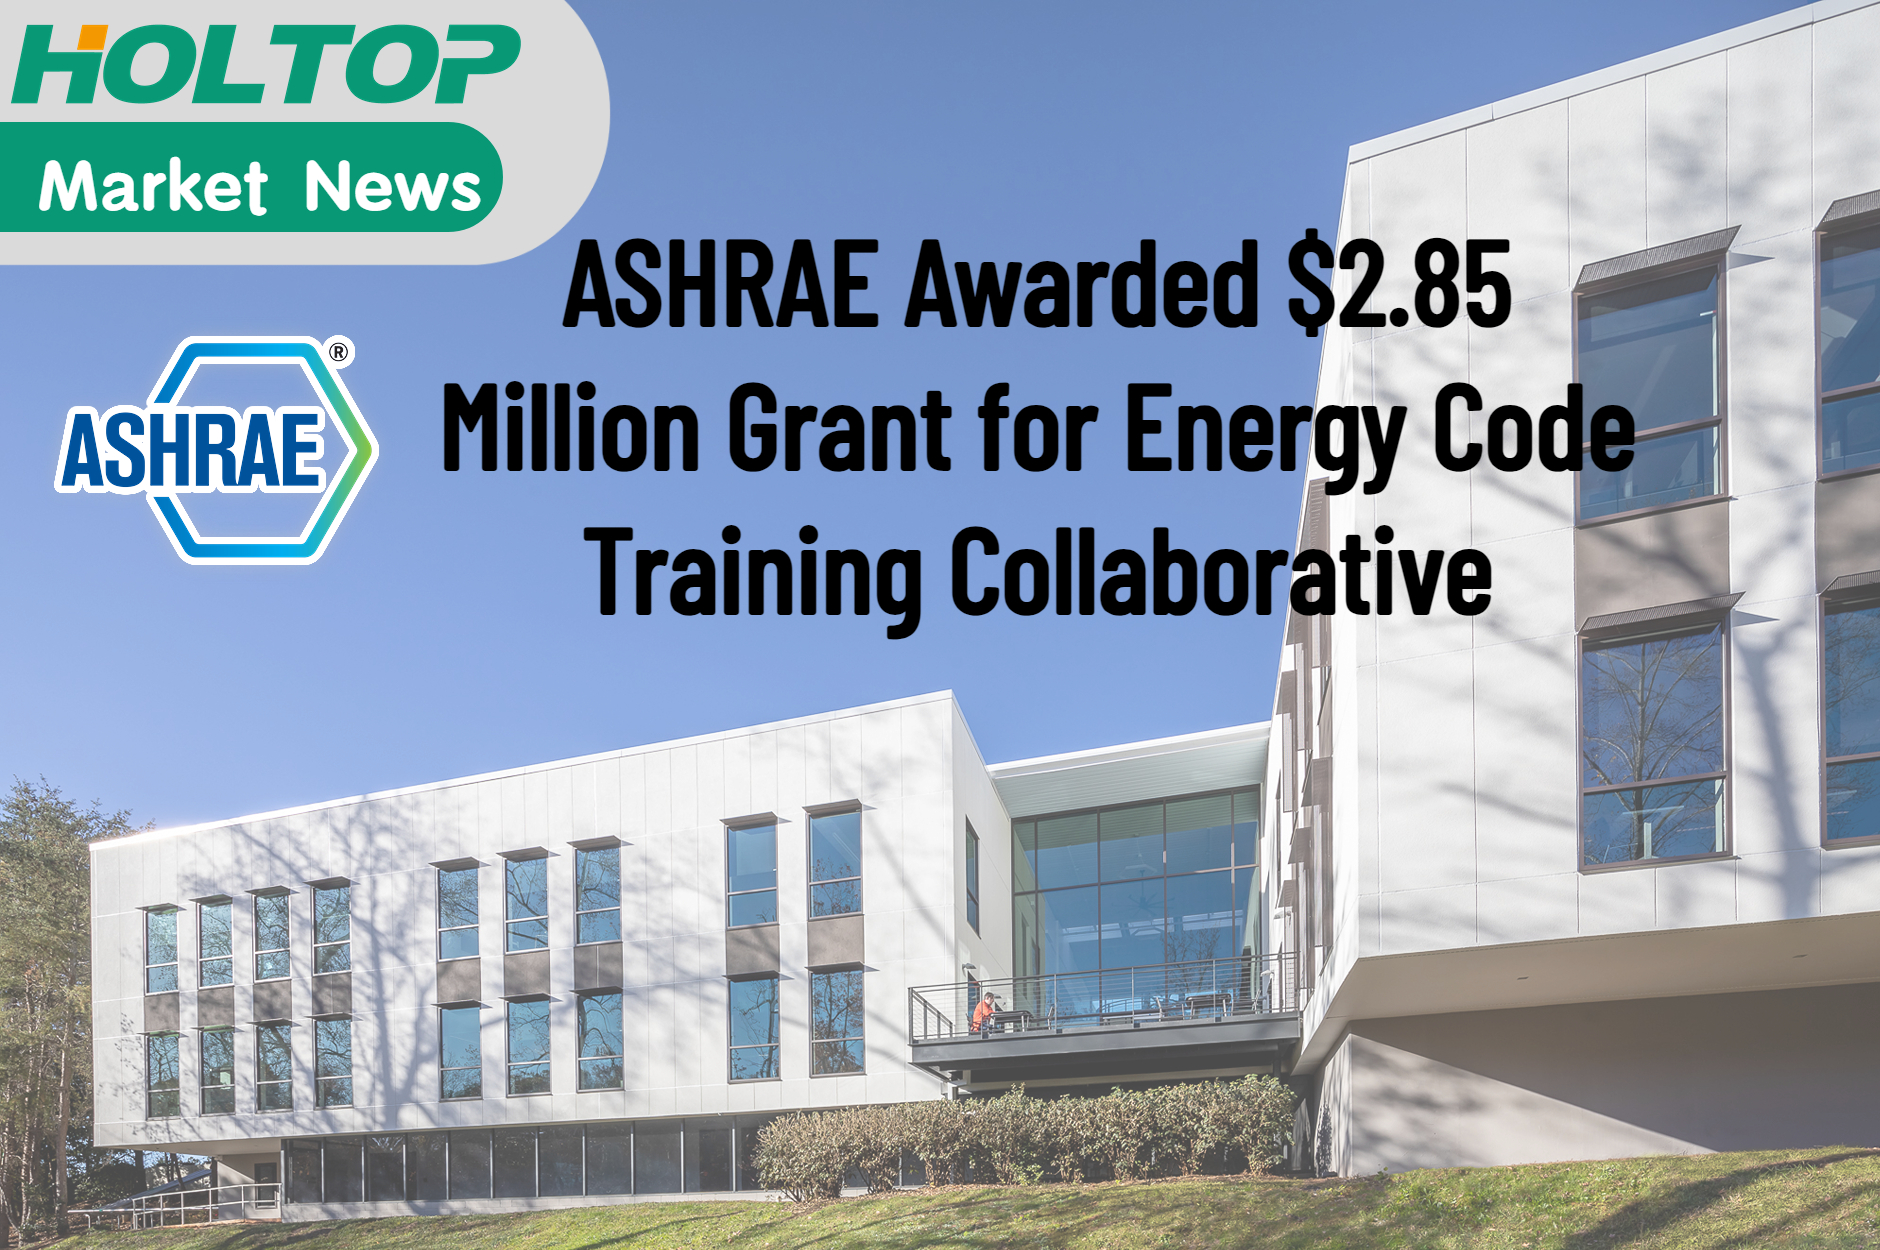 ASHRAE ha ricevuto una sovvenzione di 2,85 milioni di dollari per la collaborazione sulla formazione sul codice energetico